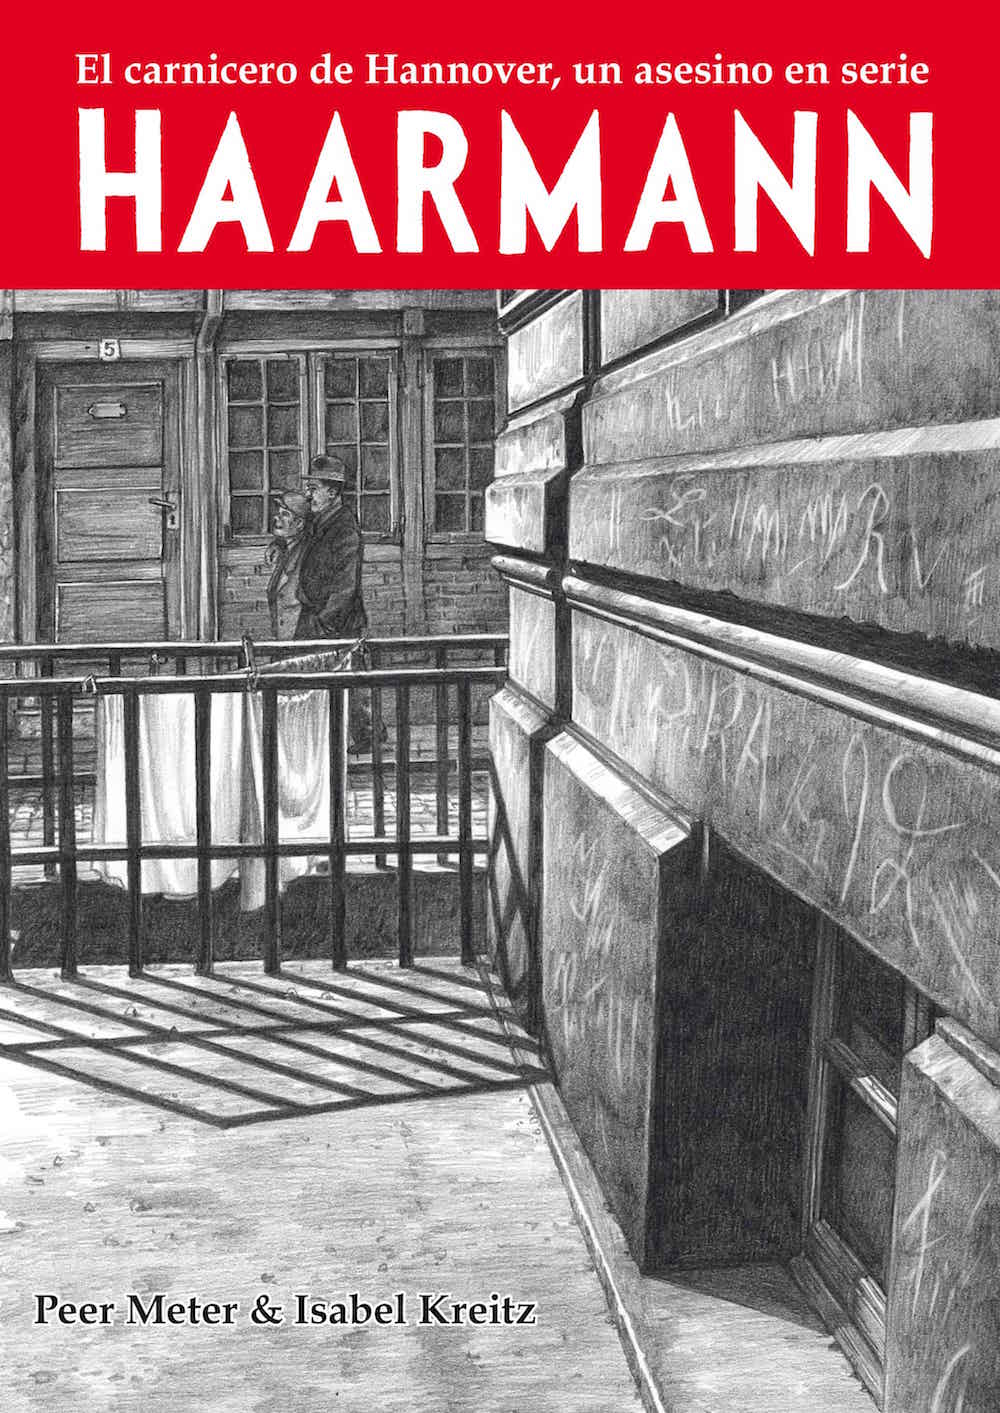 HAARMANN. EL CARNICERO DE HANNOVER, UN ASESINO EN SERIE (RUSTICA)